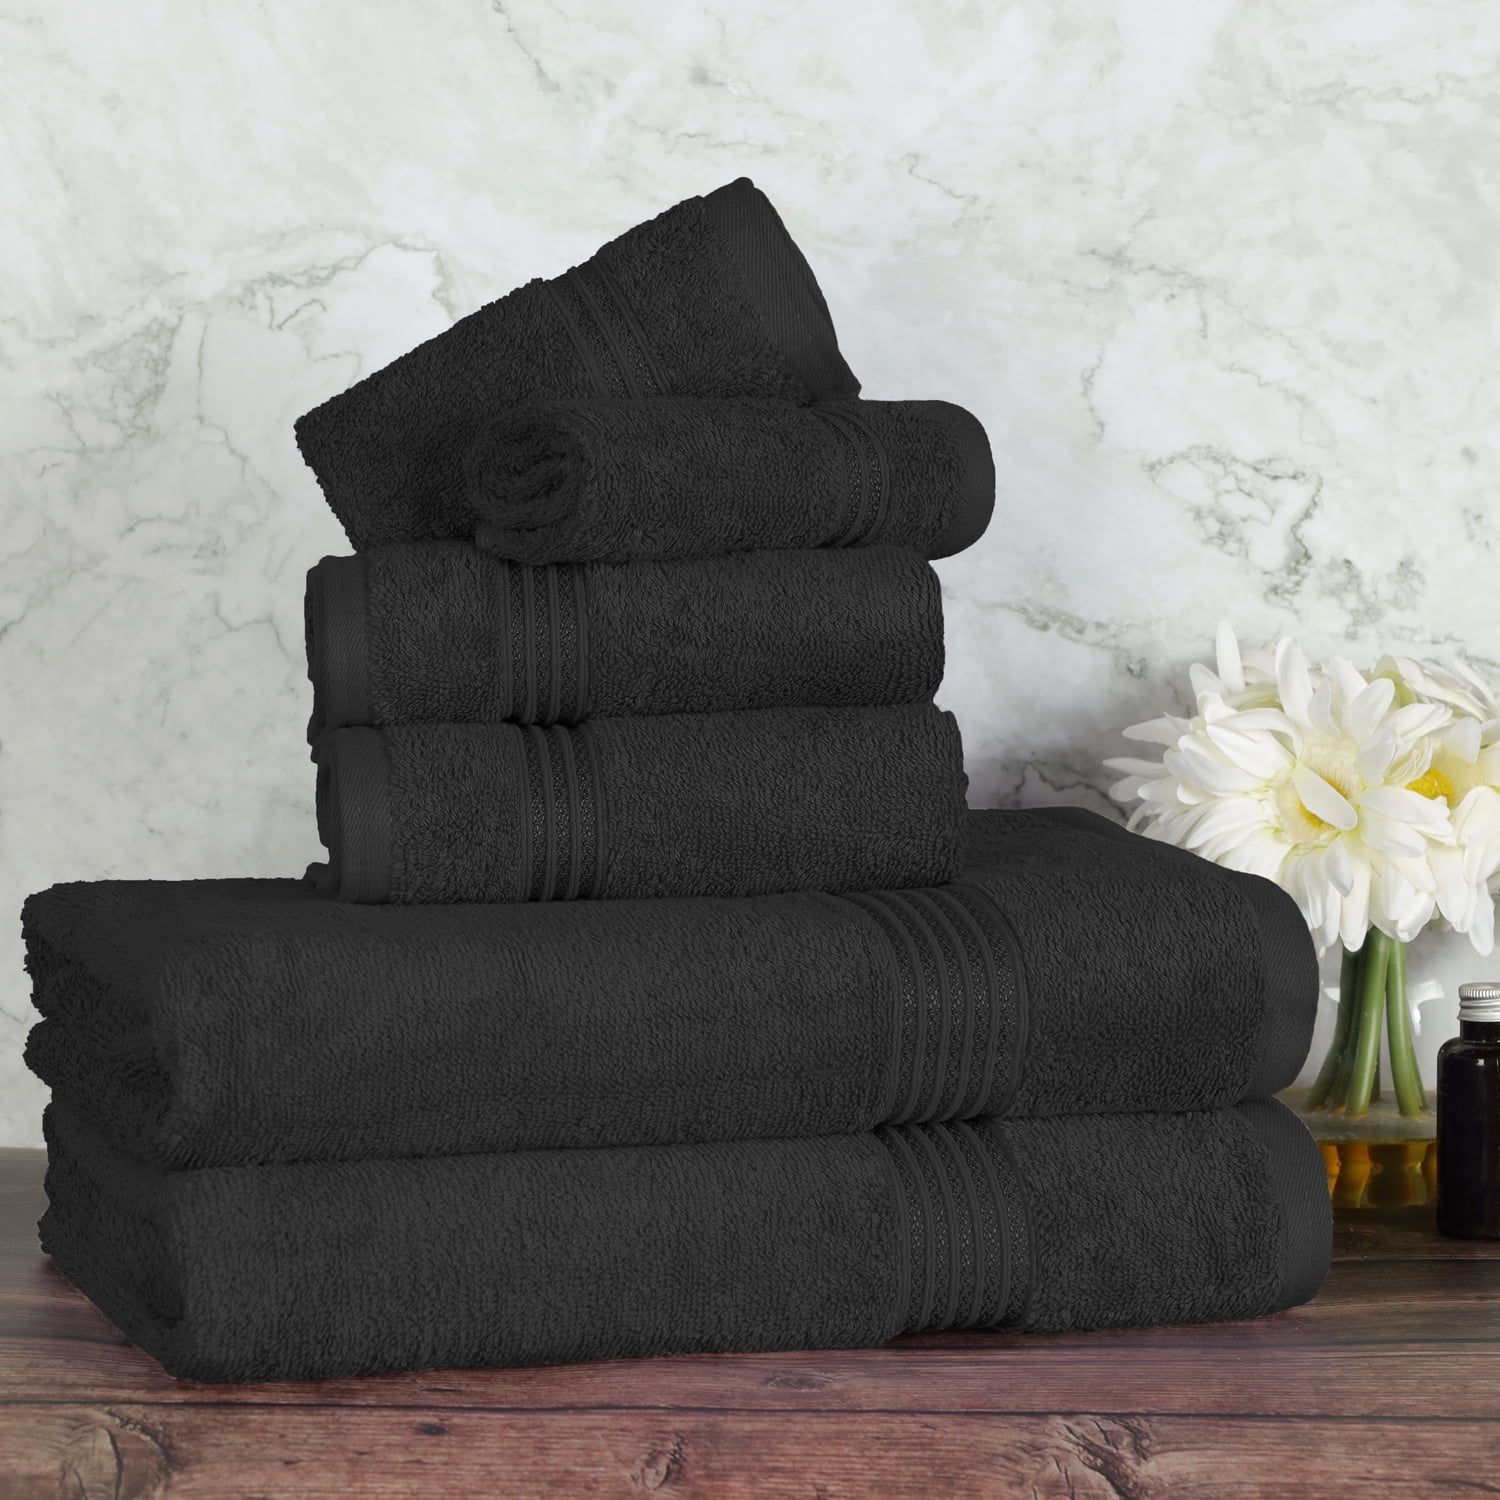 8 Piece 100% Cotton Bale Towel Set Luxury 700 GSM Soft Face Hand Bath Towel Sets 